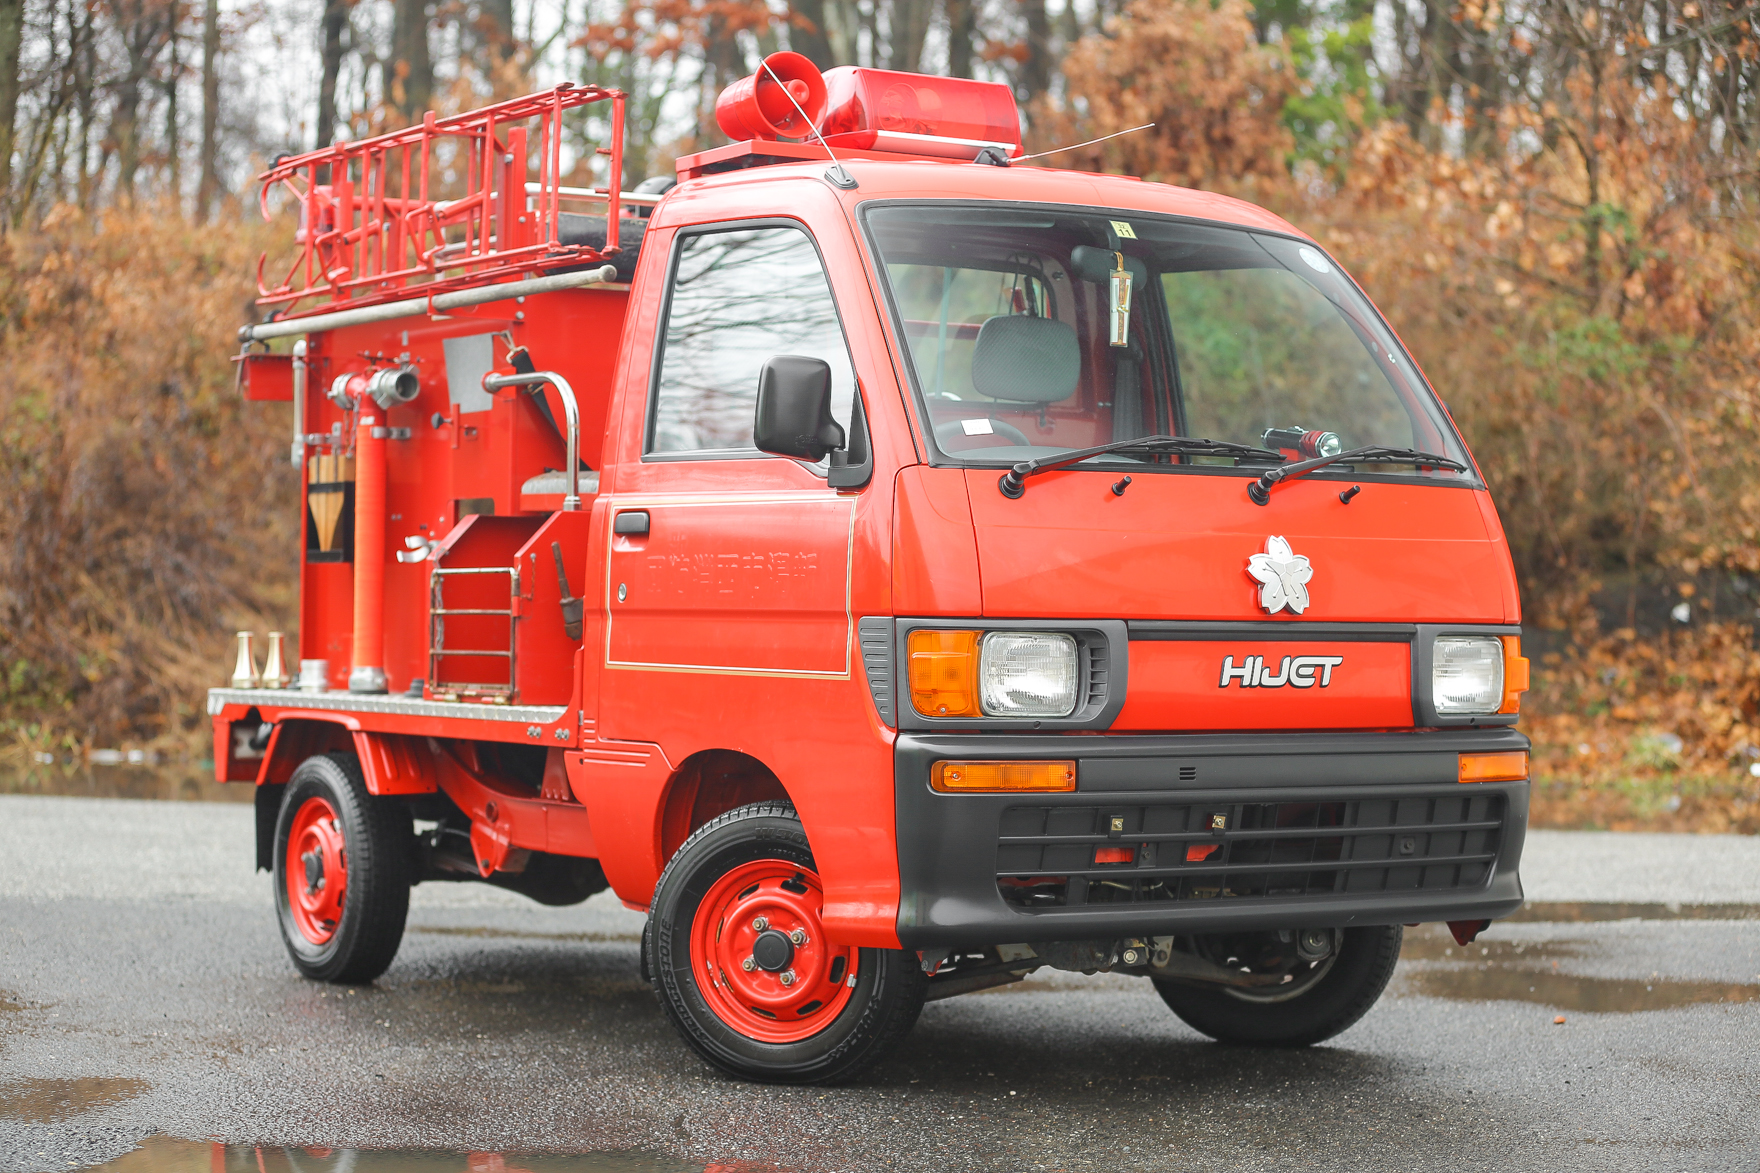 1996 Daihatsu Hijet Firetruck - $15,500